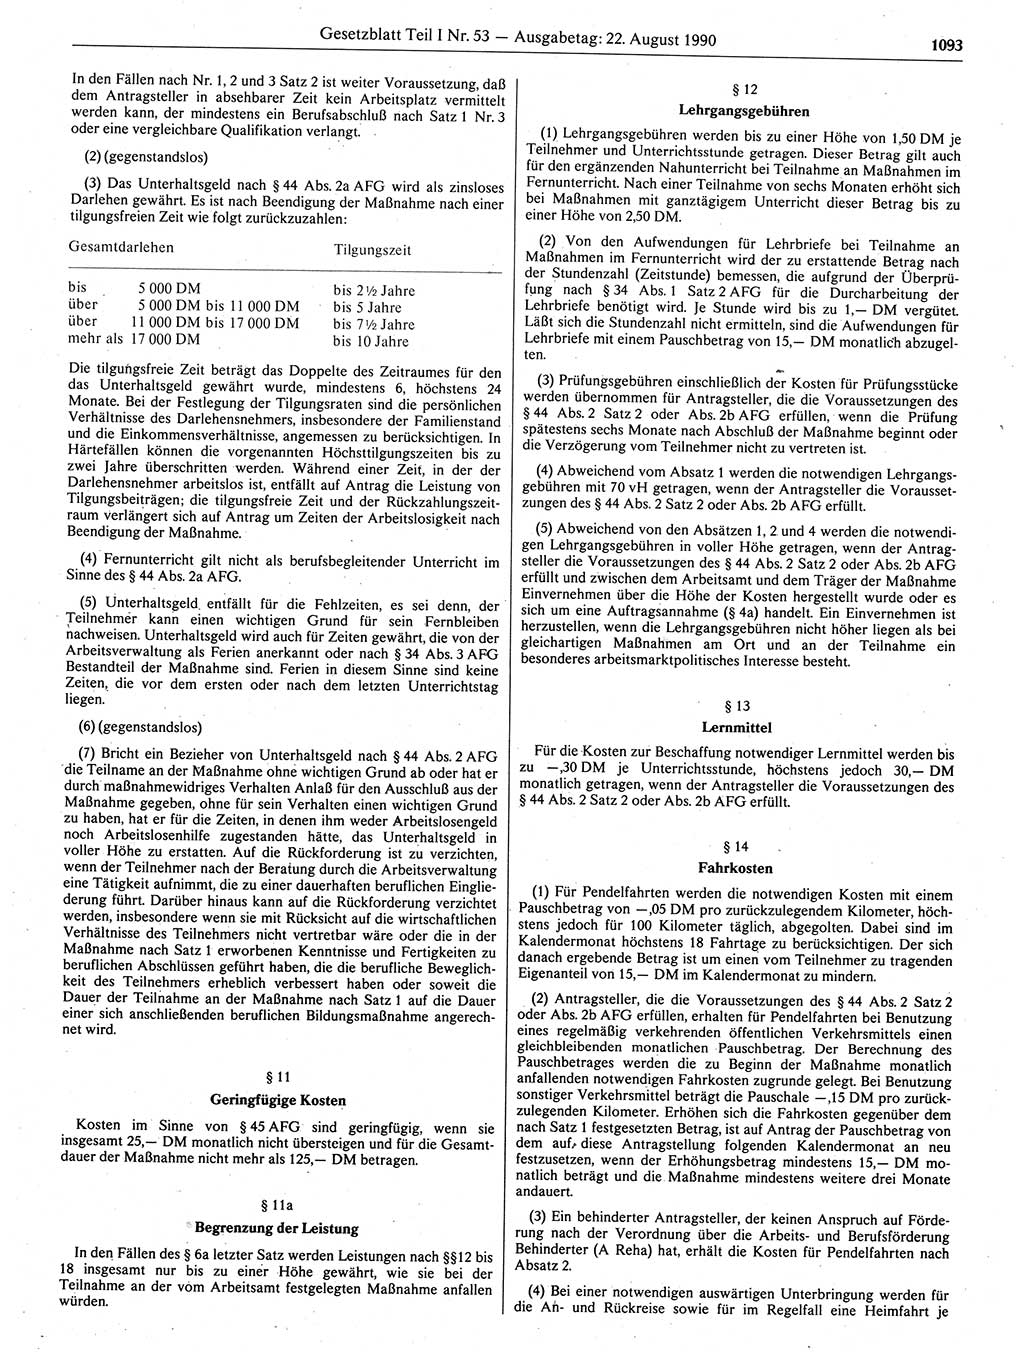 Gesetzblatt (GBl.) der Deutschen Demokratischen Republik (DDR) Teil Ⅰ 1990, Seite 1093 (GBl. DDR Ⅰ 1990, S. 1093)